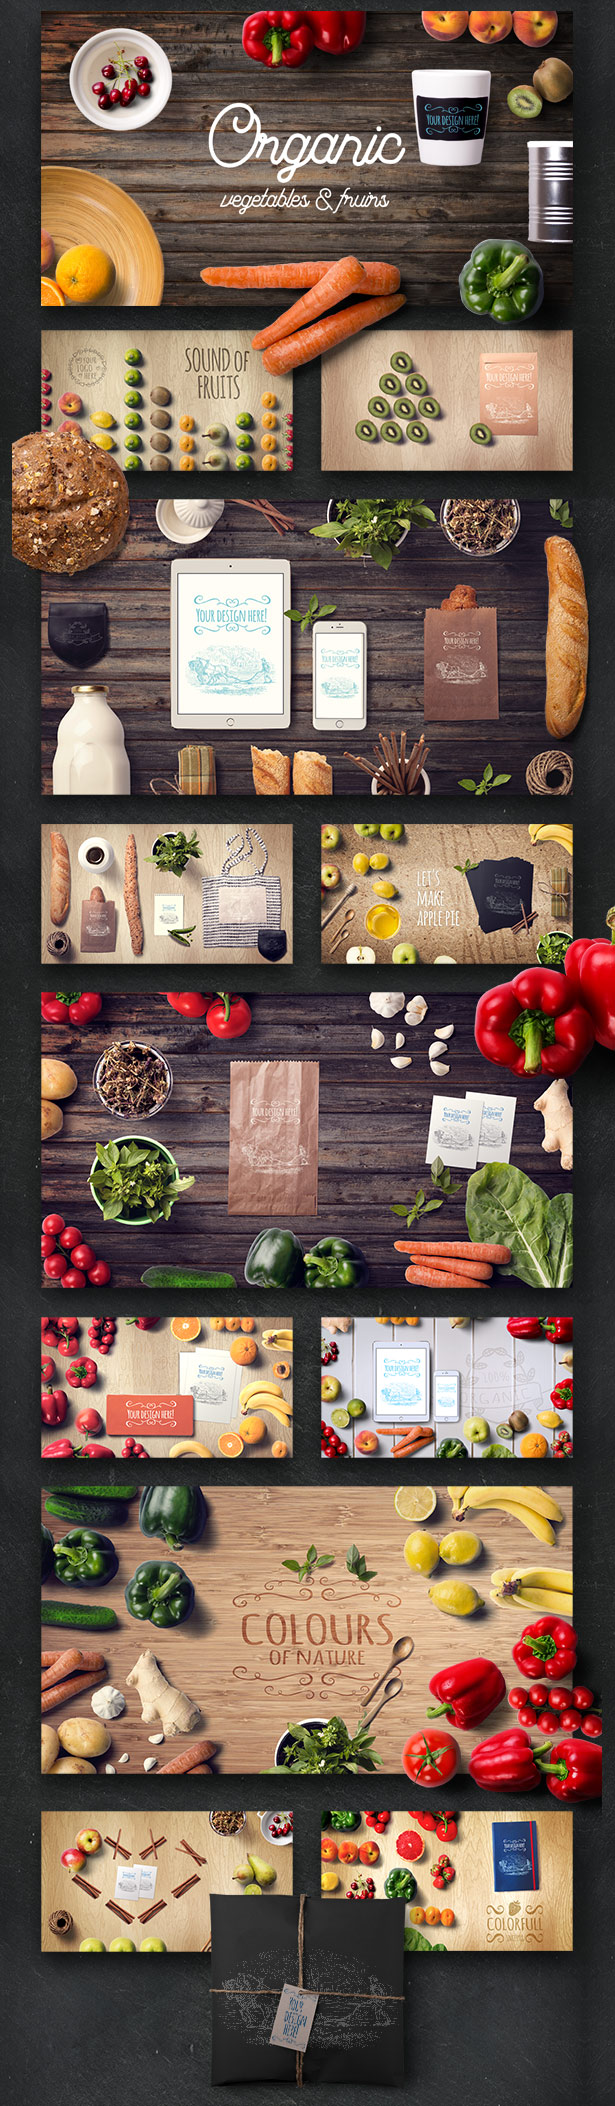 Organic Food Mockup & Hero Images Scene Generator - 2